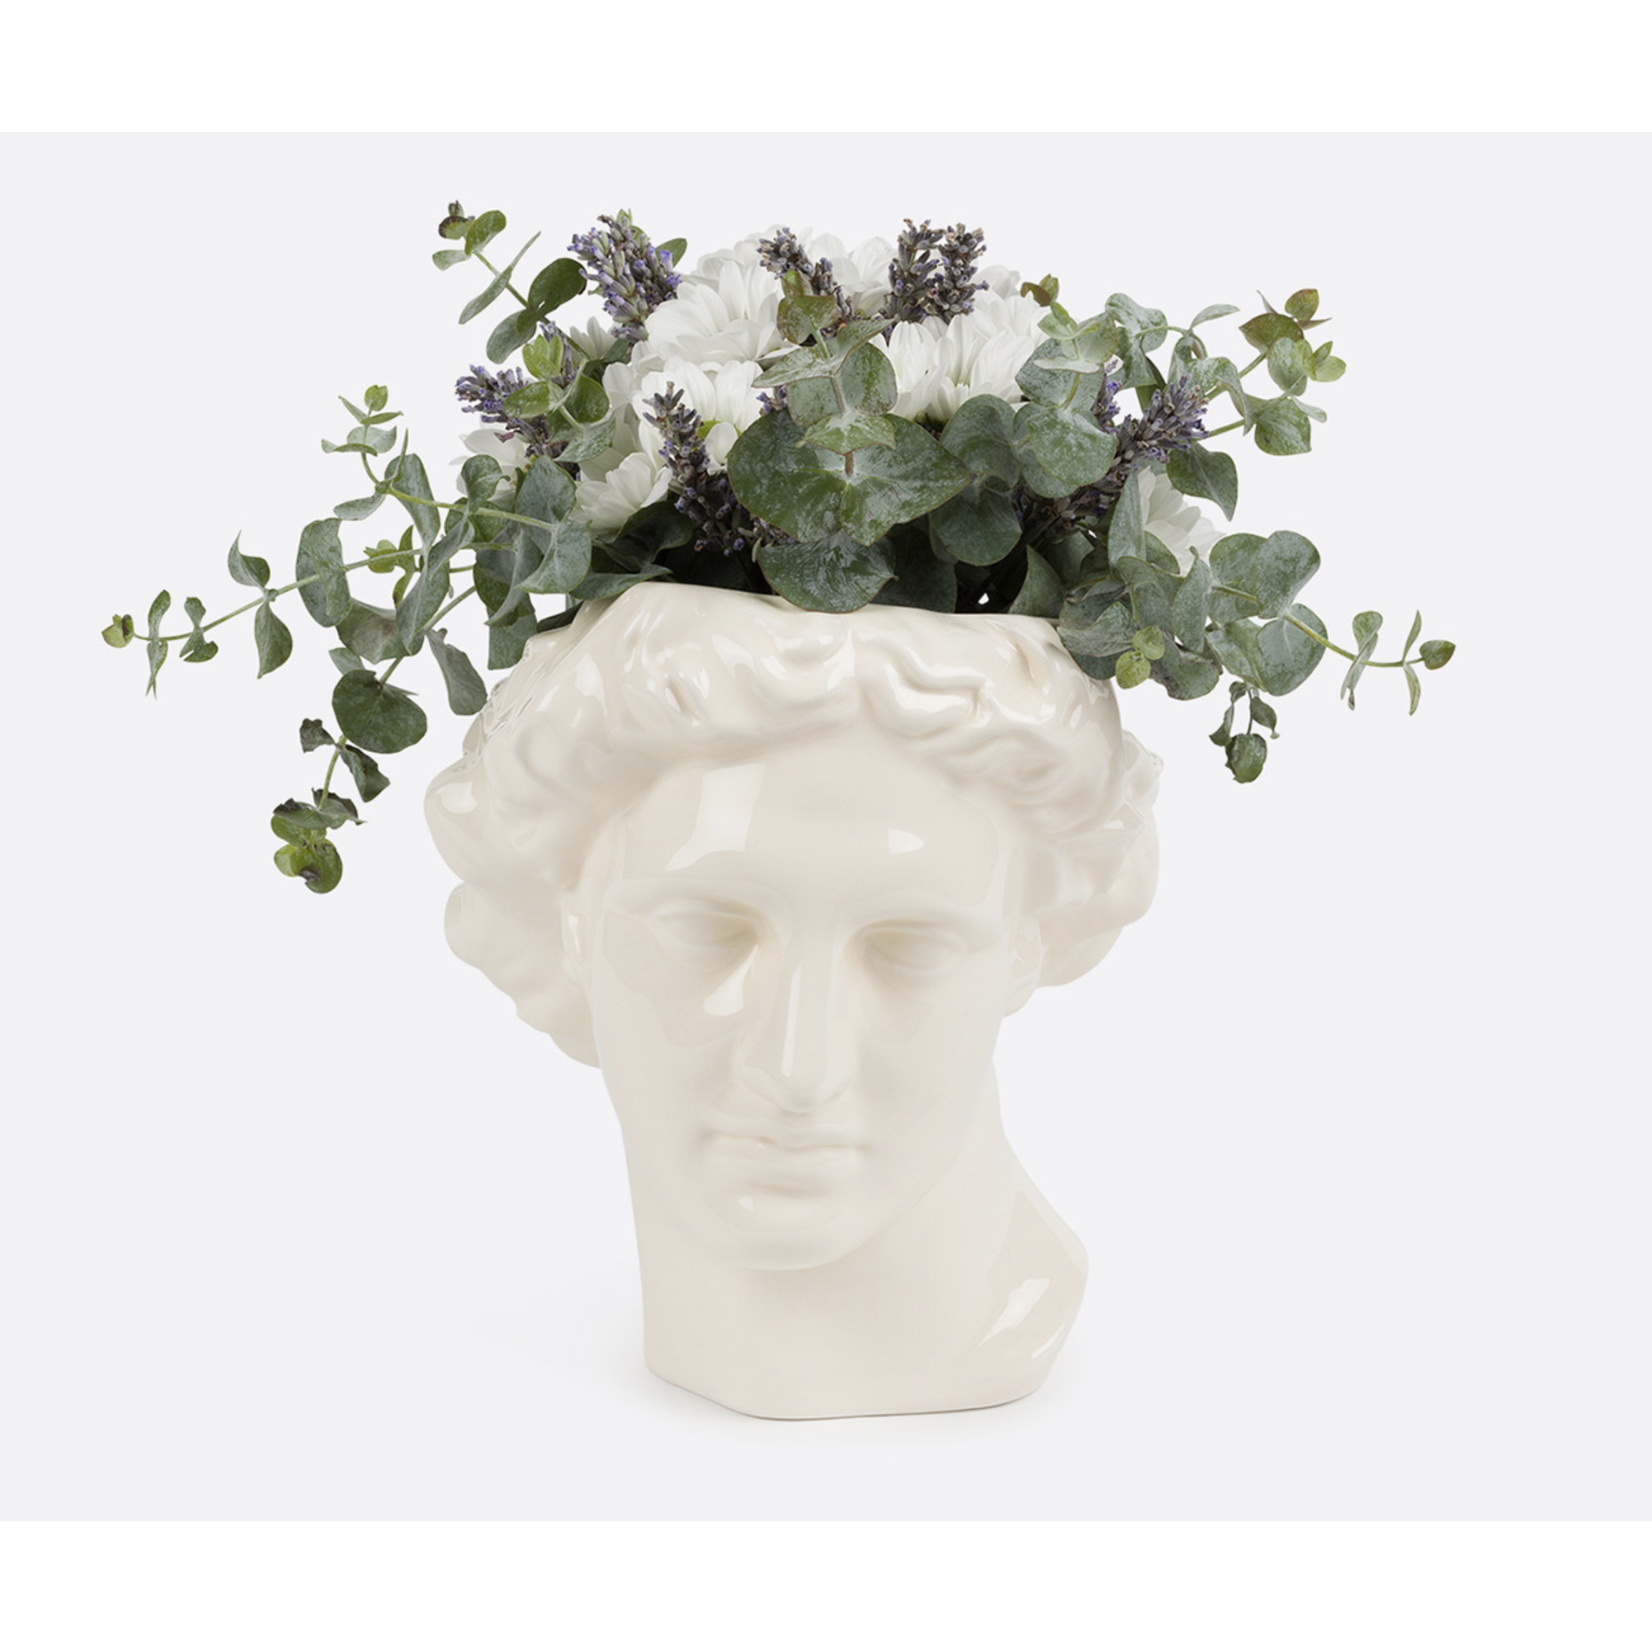 Apollo Vase White